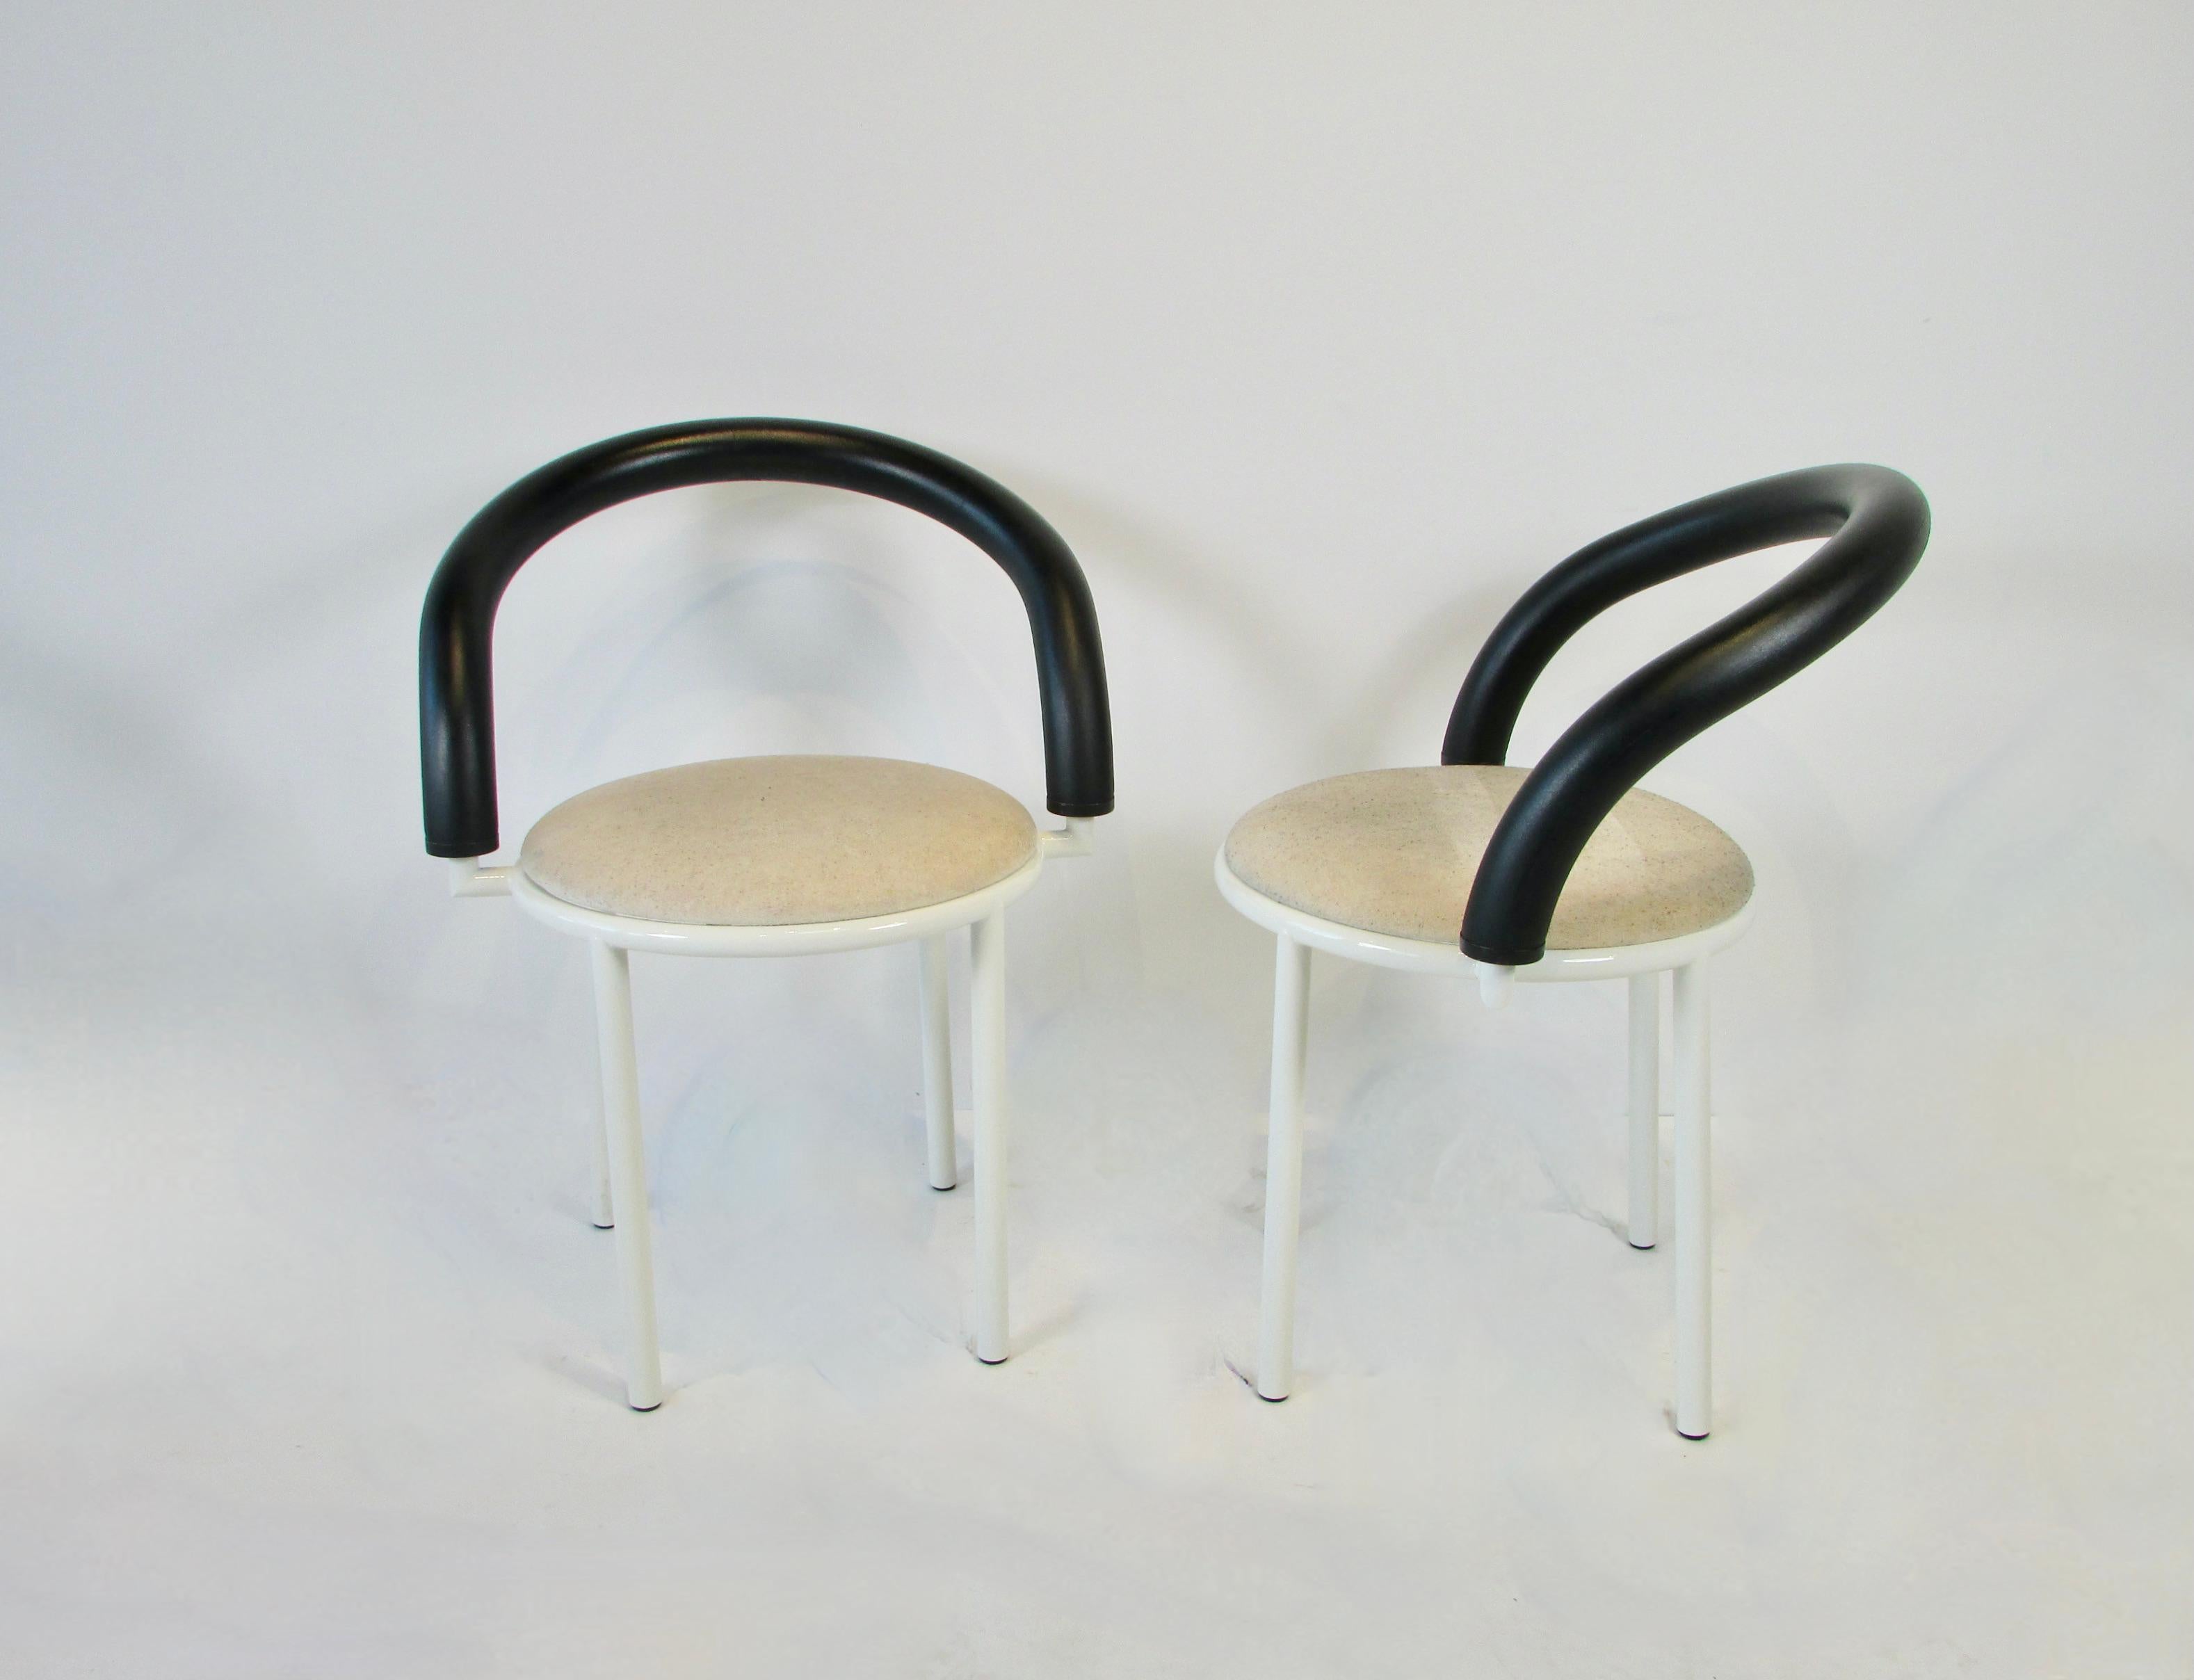 Ensemble de quatre fauteuils post-modernes de l'époque de Memphis. Conçu par la designer italienne Anna Anselmi. Les bras en forme de bretzel sont recouverts d'une mousse ou d'un caoutchouc dense. Les bases en acier sont finies en laque blanche. Les